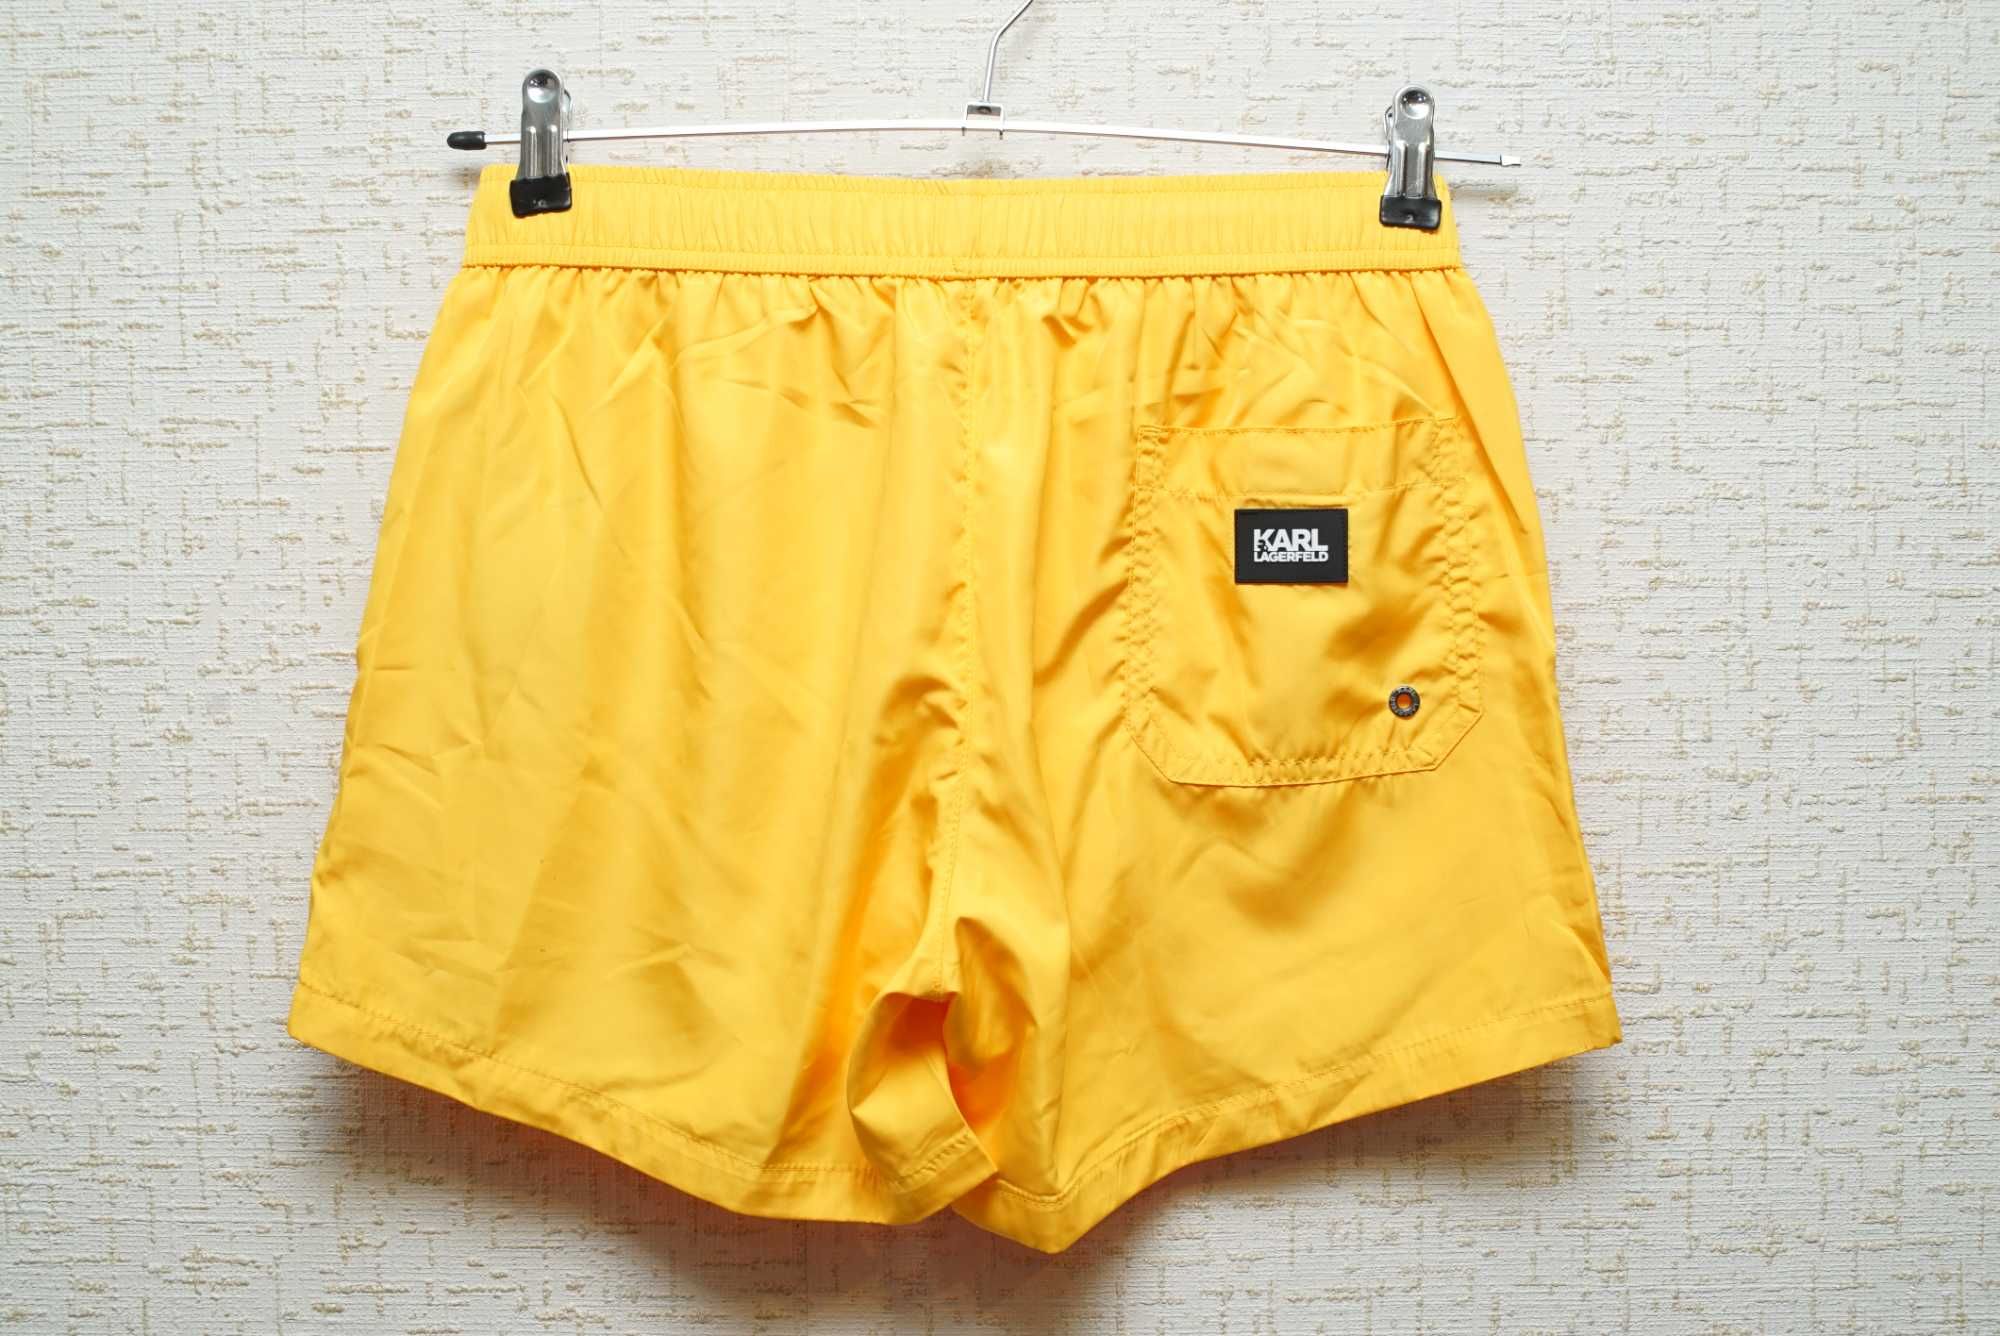 Мужские плавательные шорты KARL LAGERFELD желтого цвета.